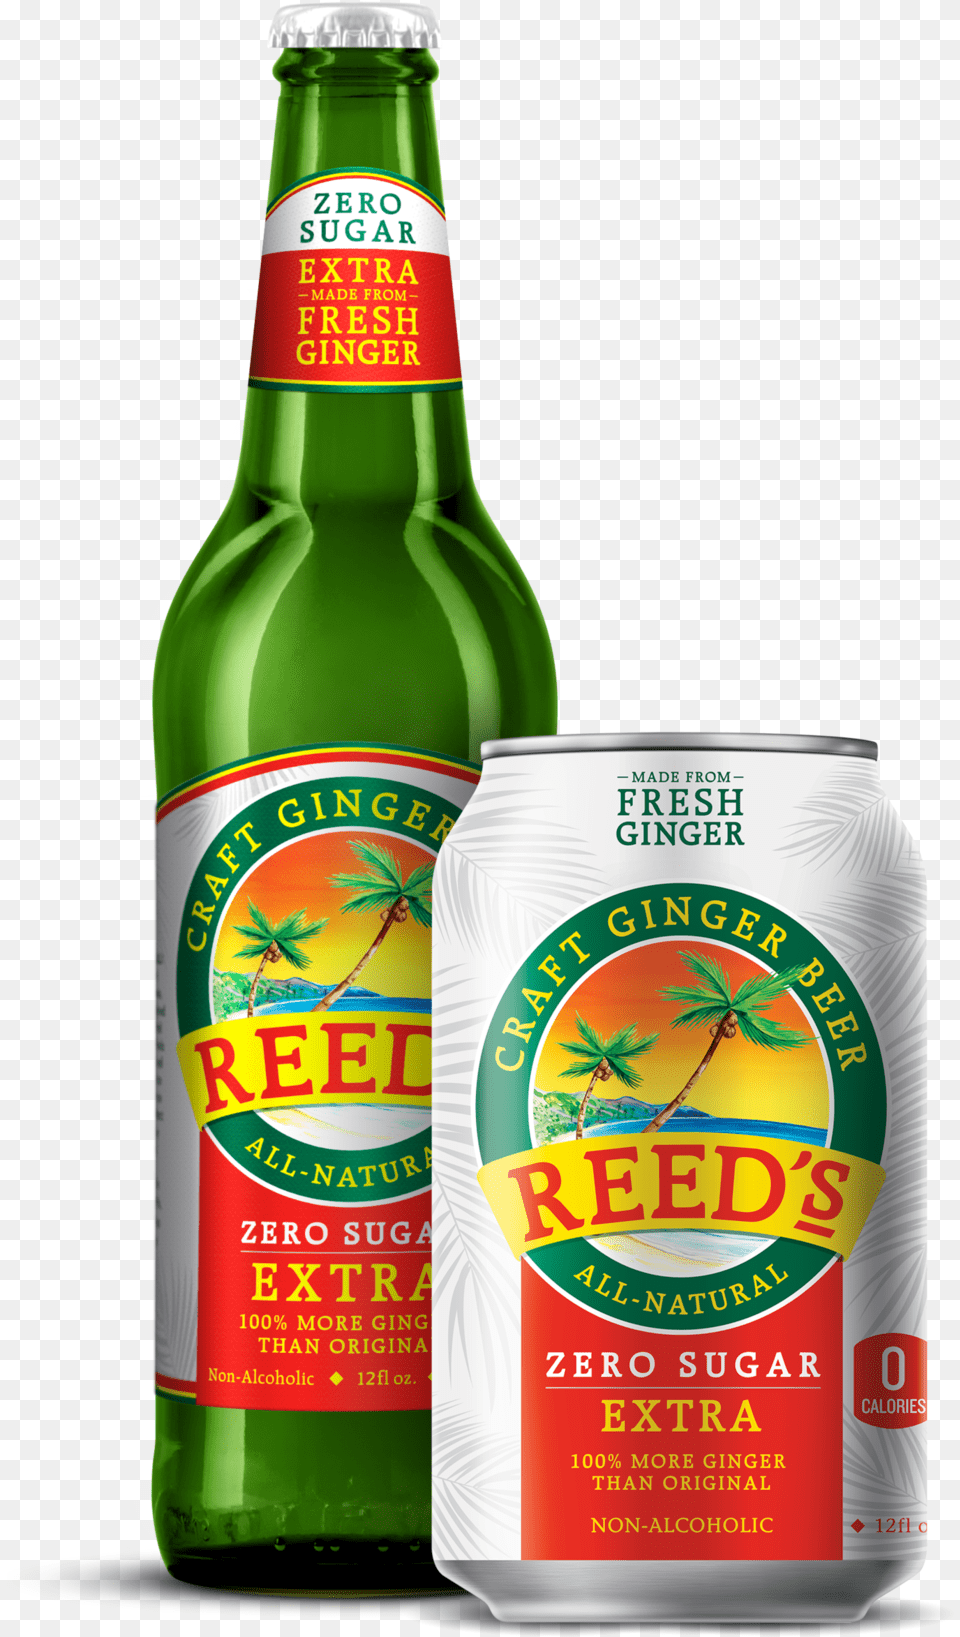 Reeds Zero Sugar Ginger Beer Keto Friendly, Alcohol, Beverage, Lager, Beer Bottle Free Transparent Png